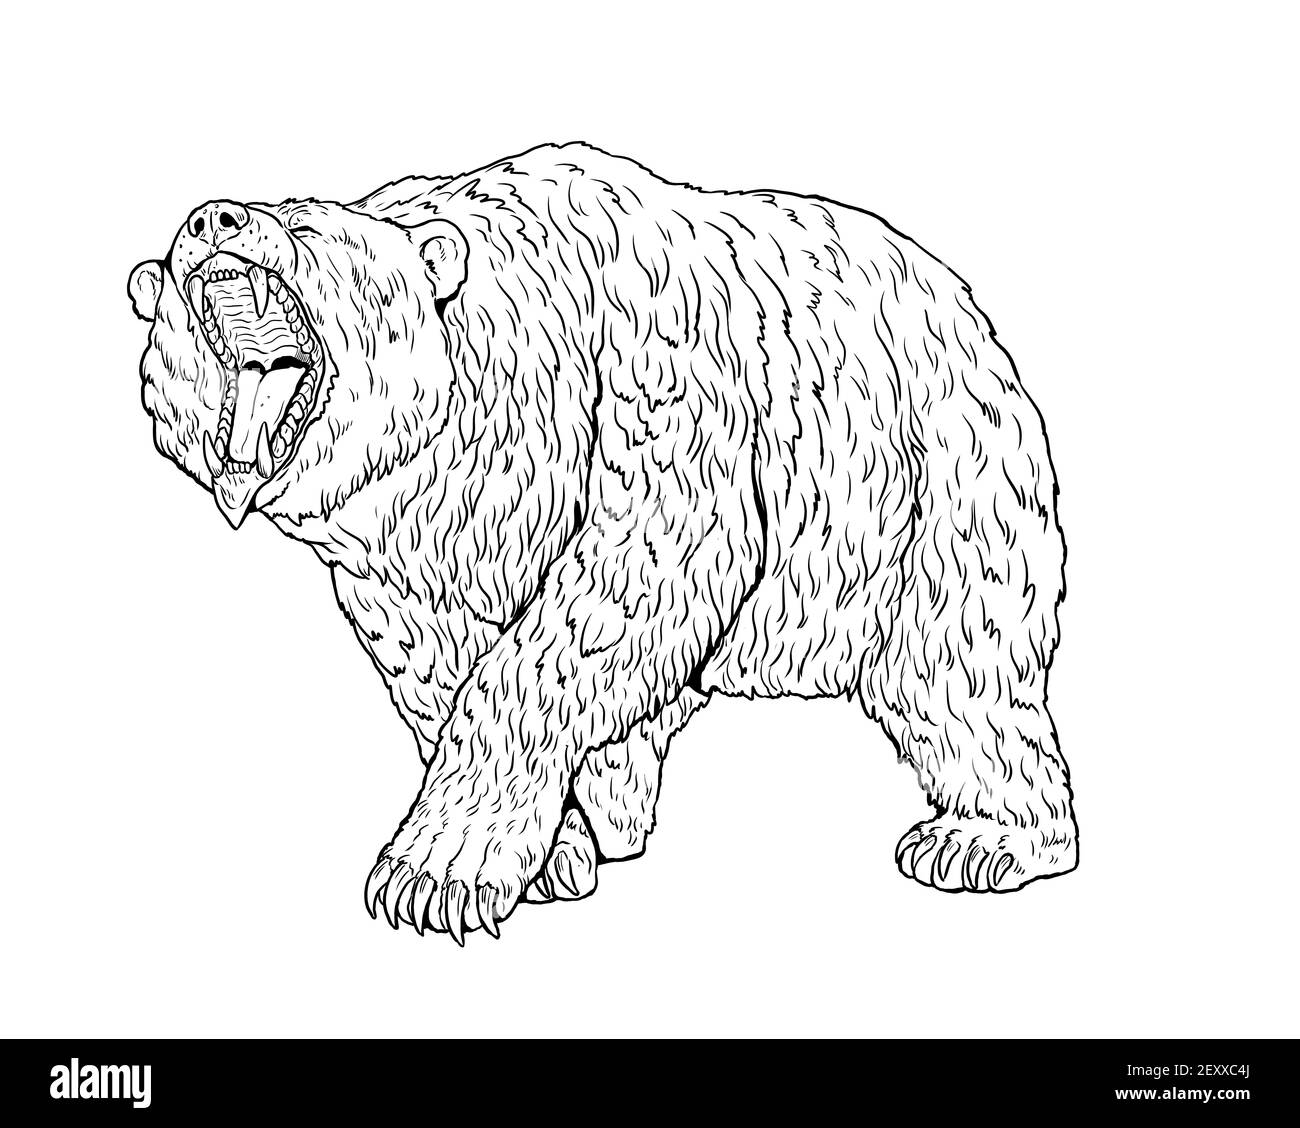 Grizzly Bär, Höhlenbär Illustration. Zeichnung des Bärenangriffs. Stockfoto